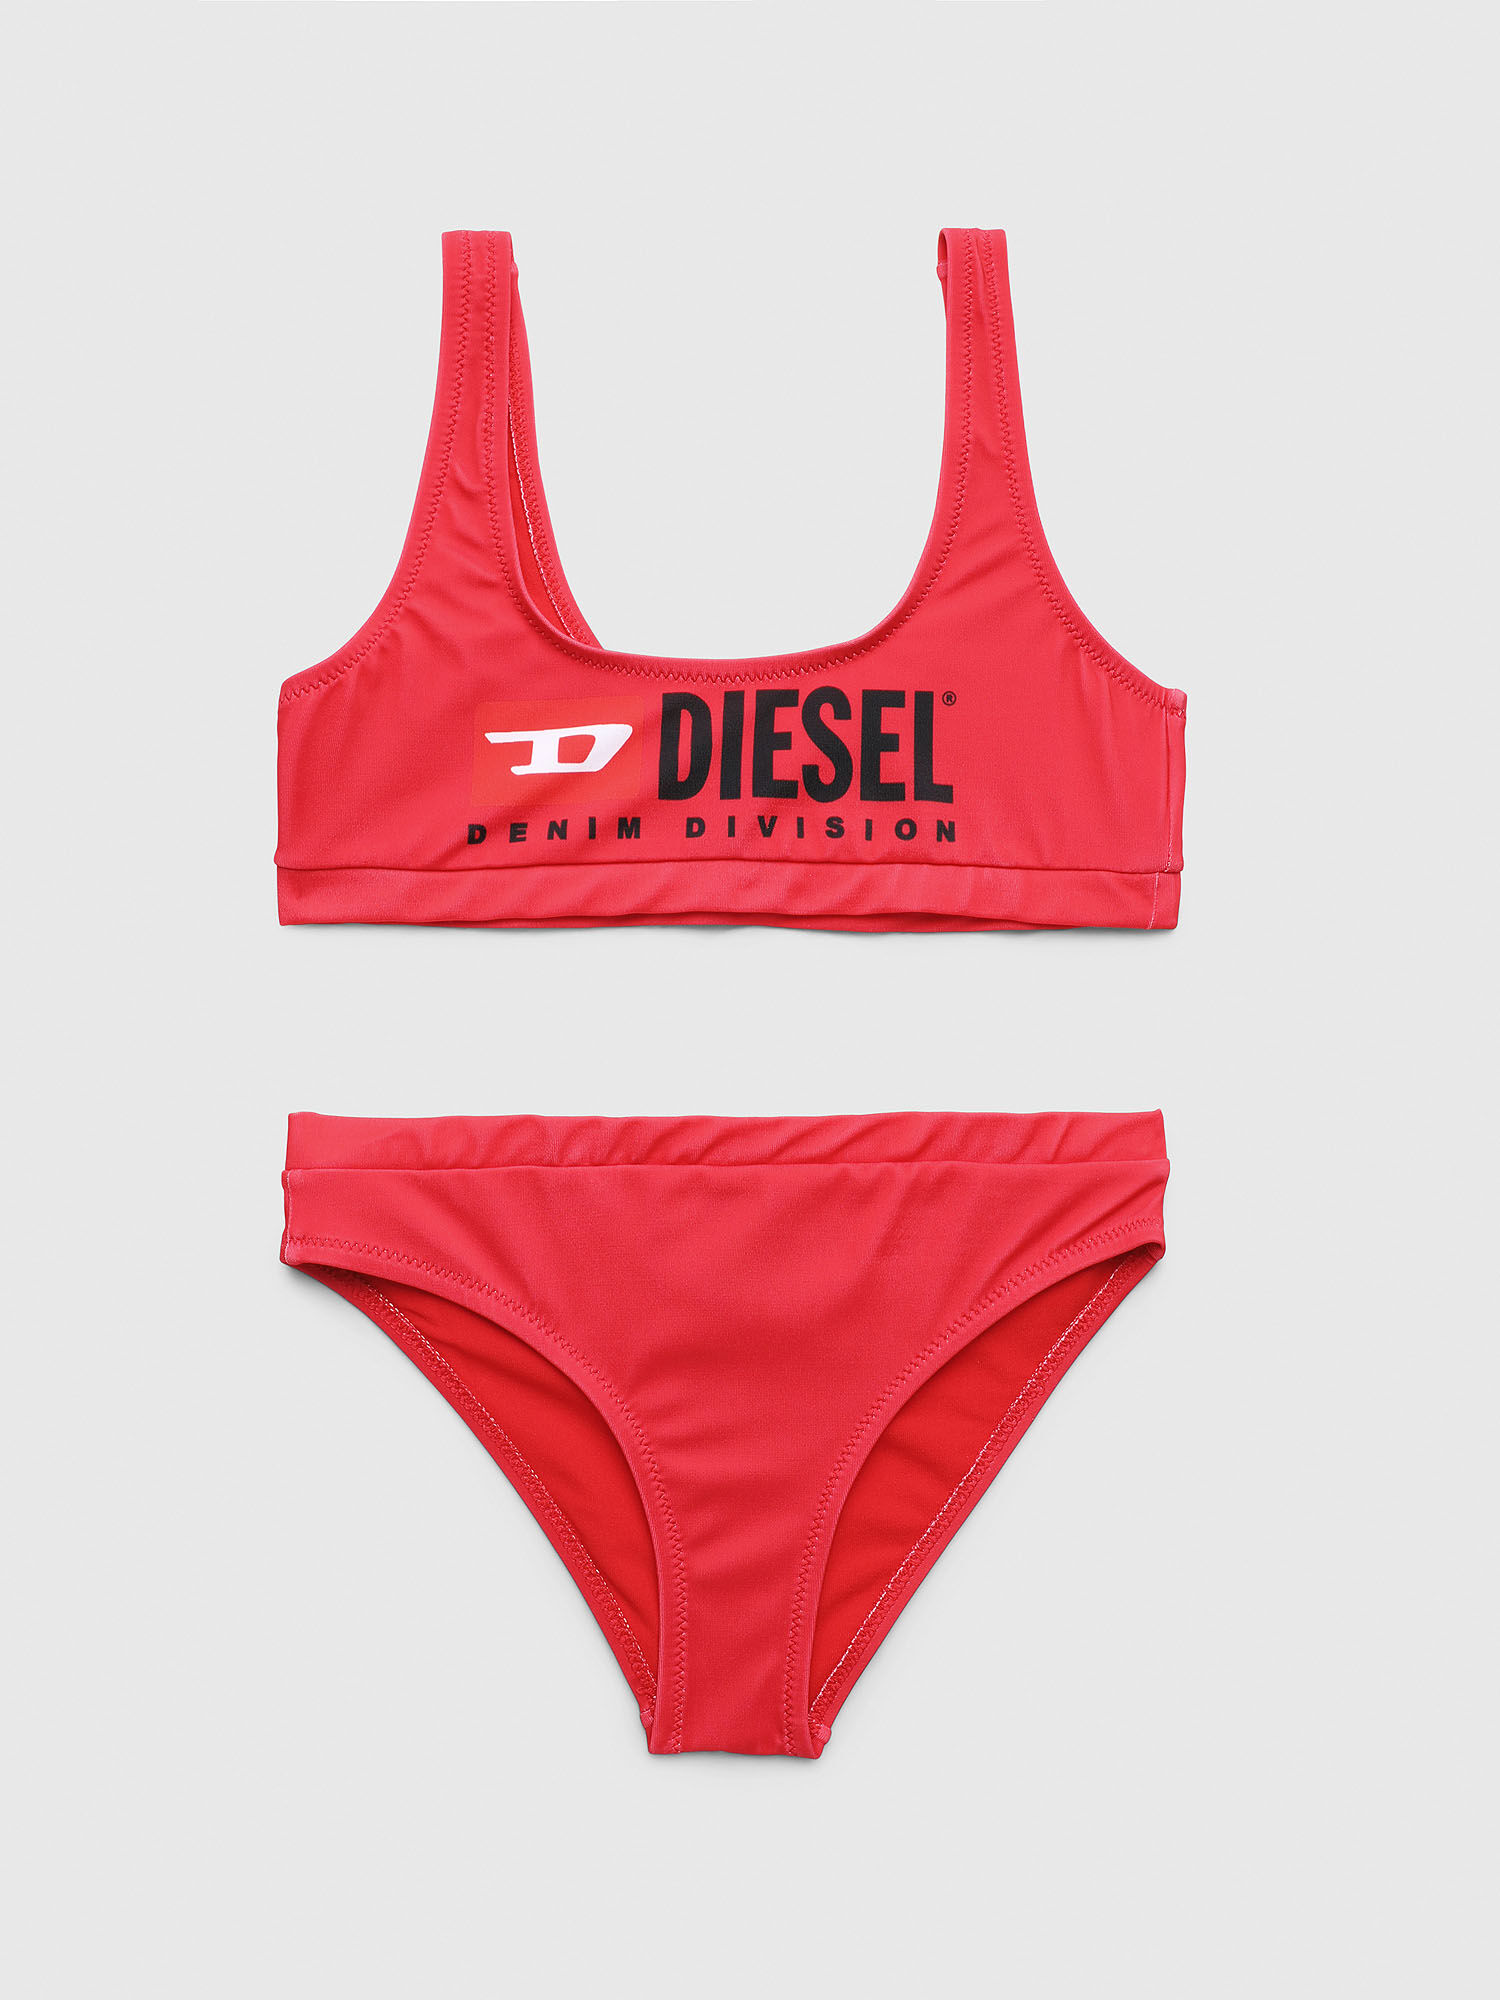 Diesel - METSJ, Red - Image 1